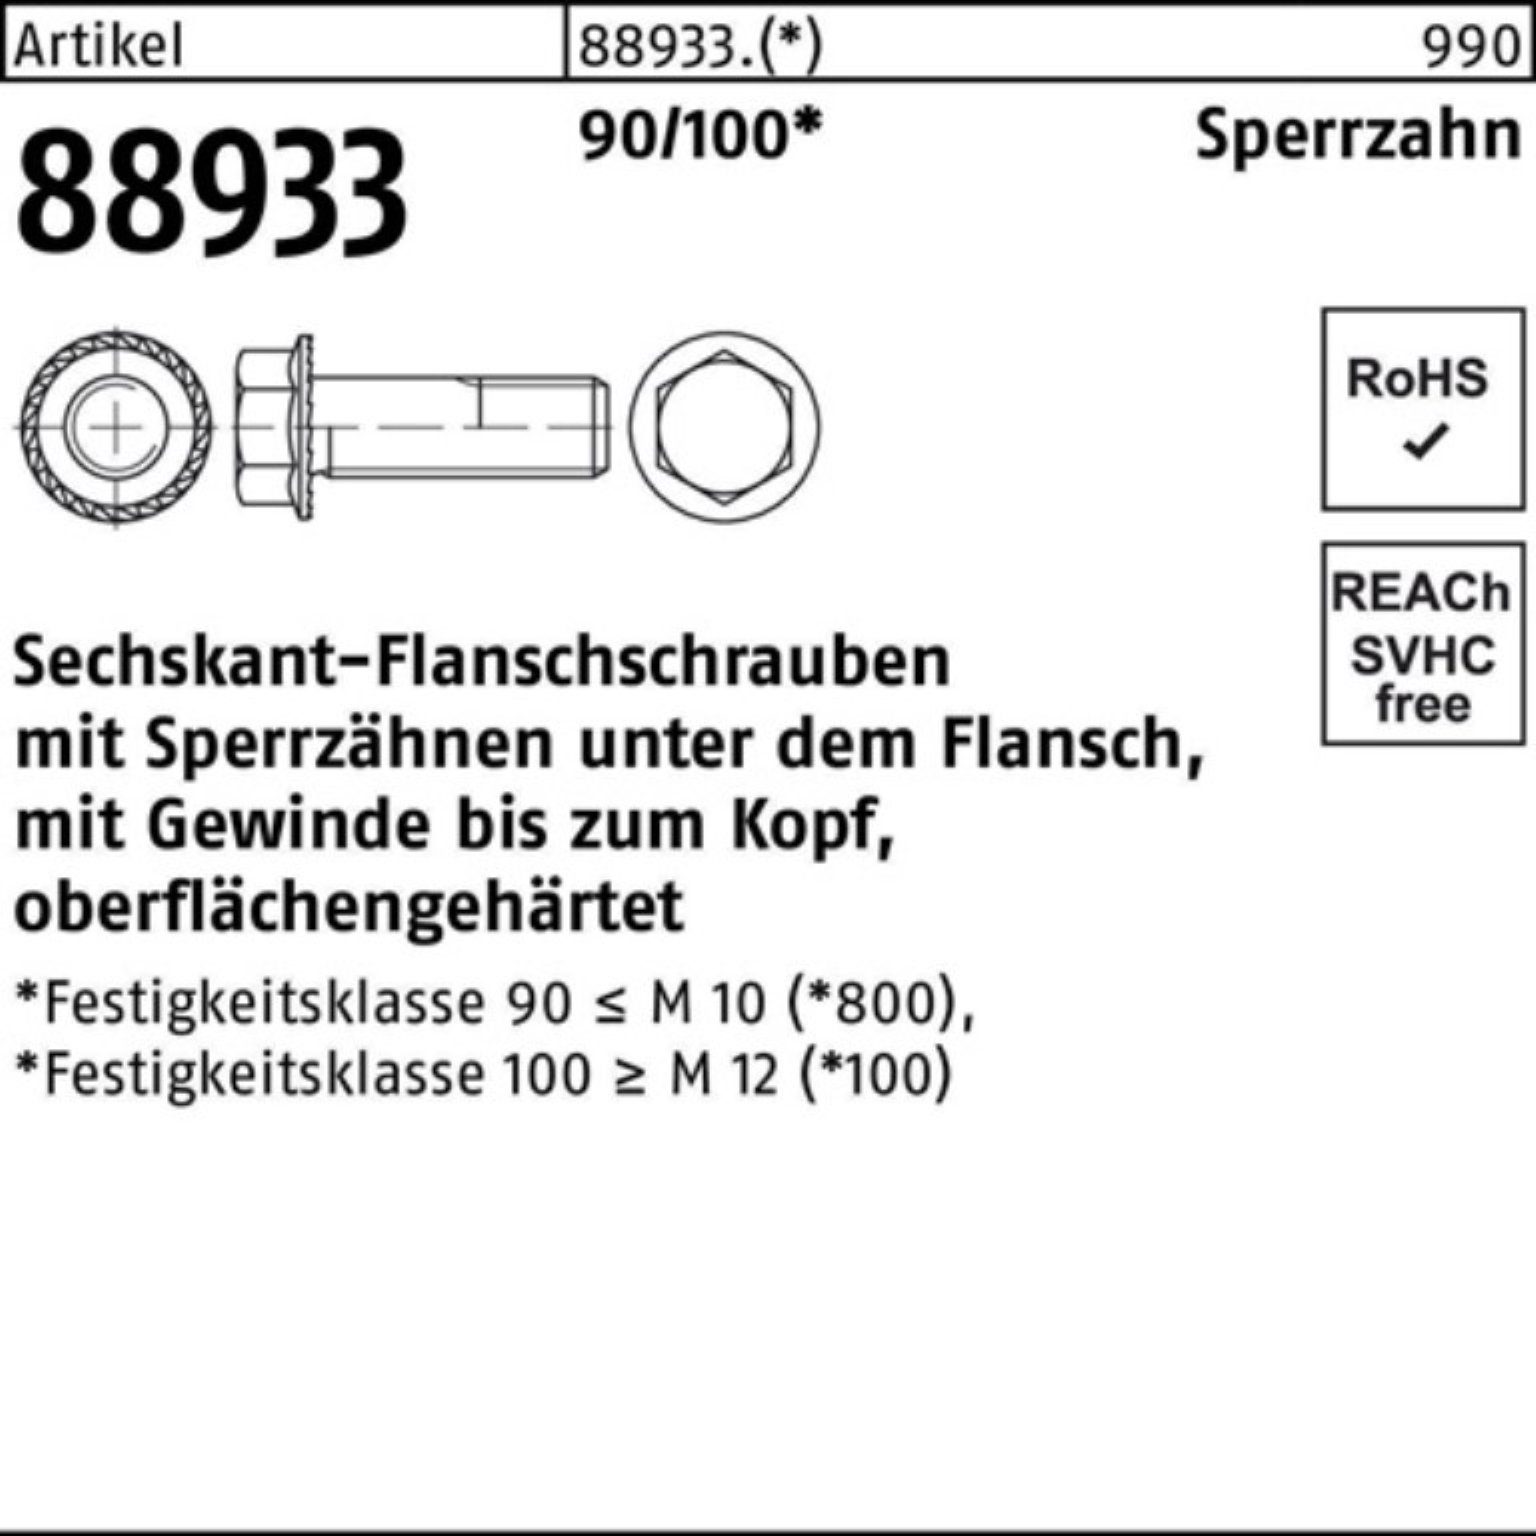 14 88933 M6x 5 Sechskantflanschschraube Schraube VG R Pack Reyher 500er Sperrz. 90/100